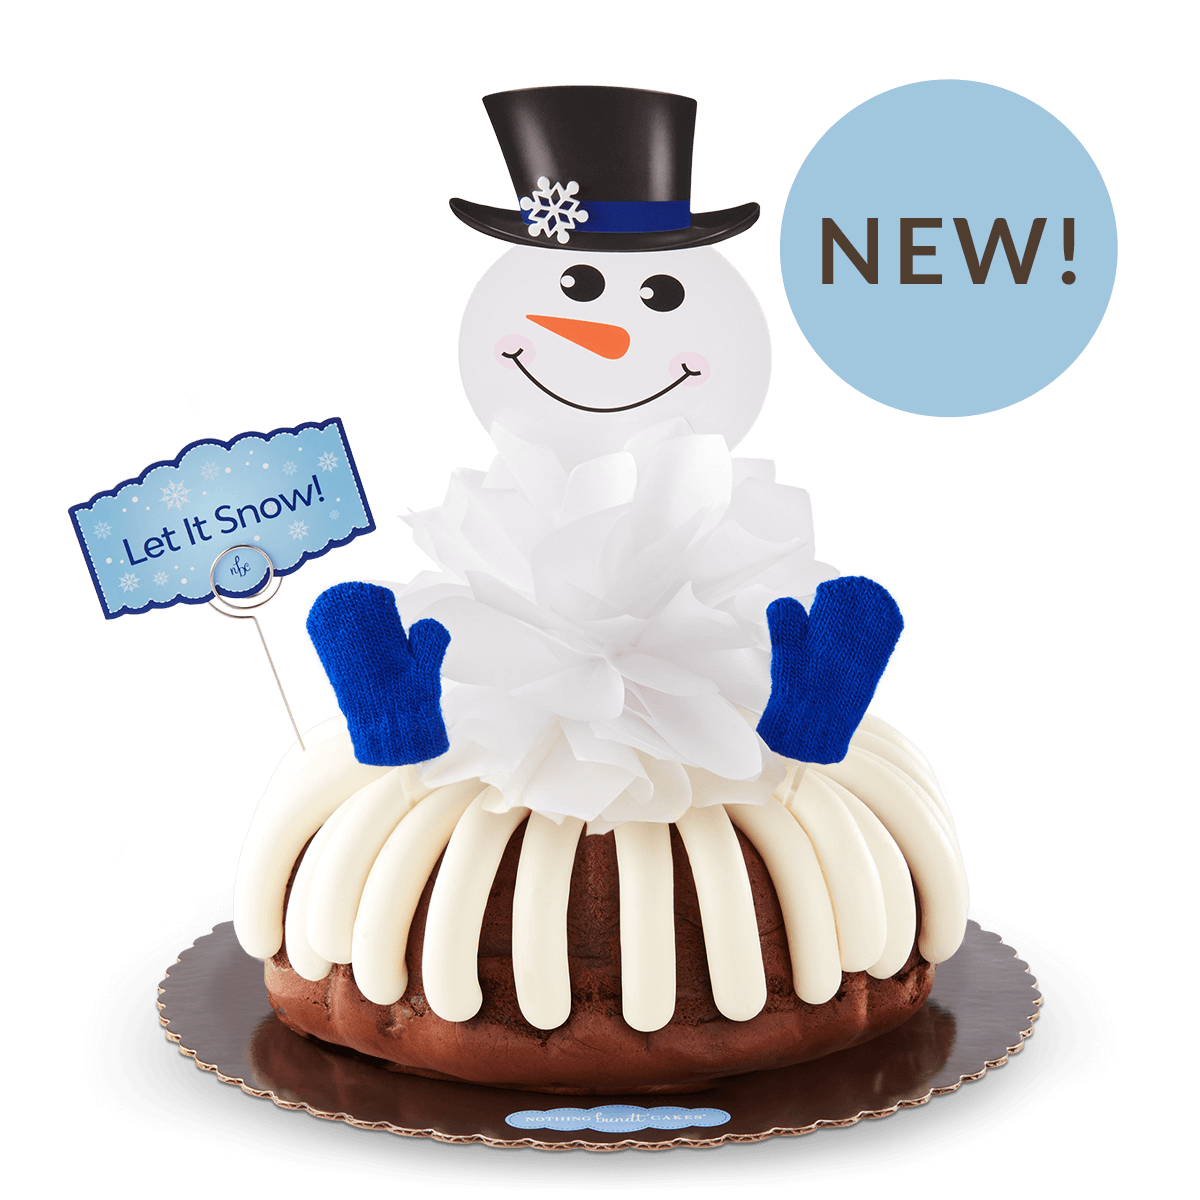 Let it Snow Bundt Cake